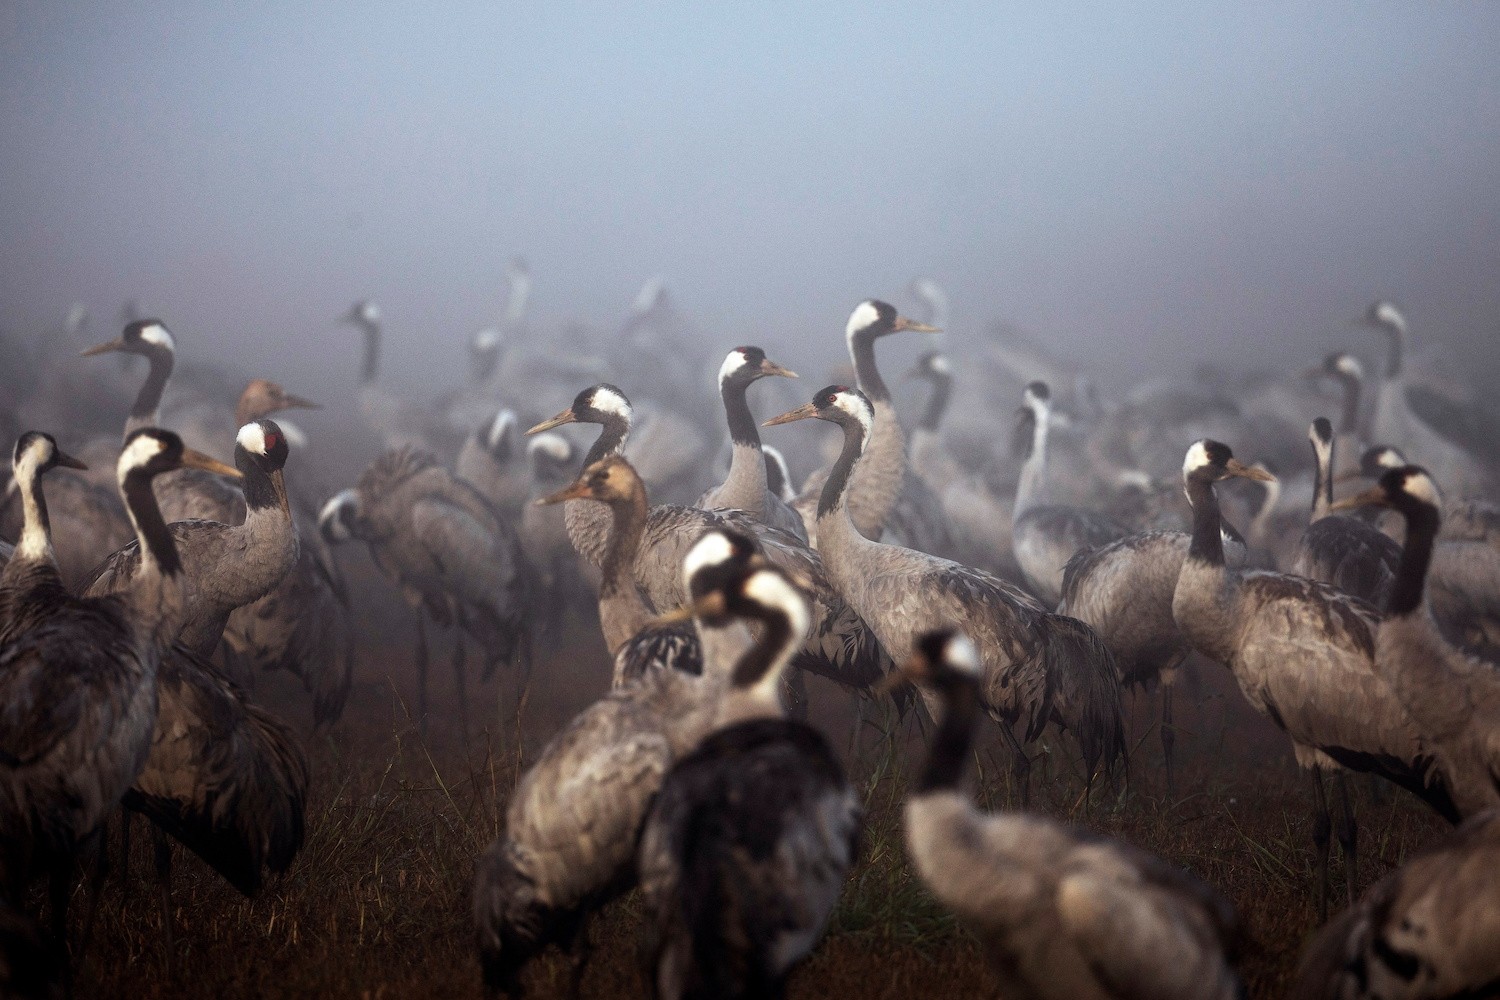 Aves se reúnem durante a temporada de migração em uma manhã nublada na Reserva Natural de Hula, no norte de Israel  (Foto: REUTERS/Ronen Zvulun)